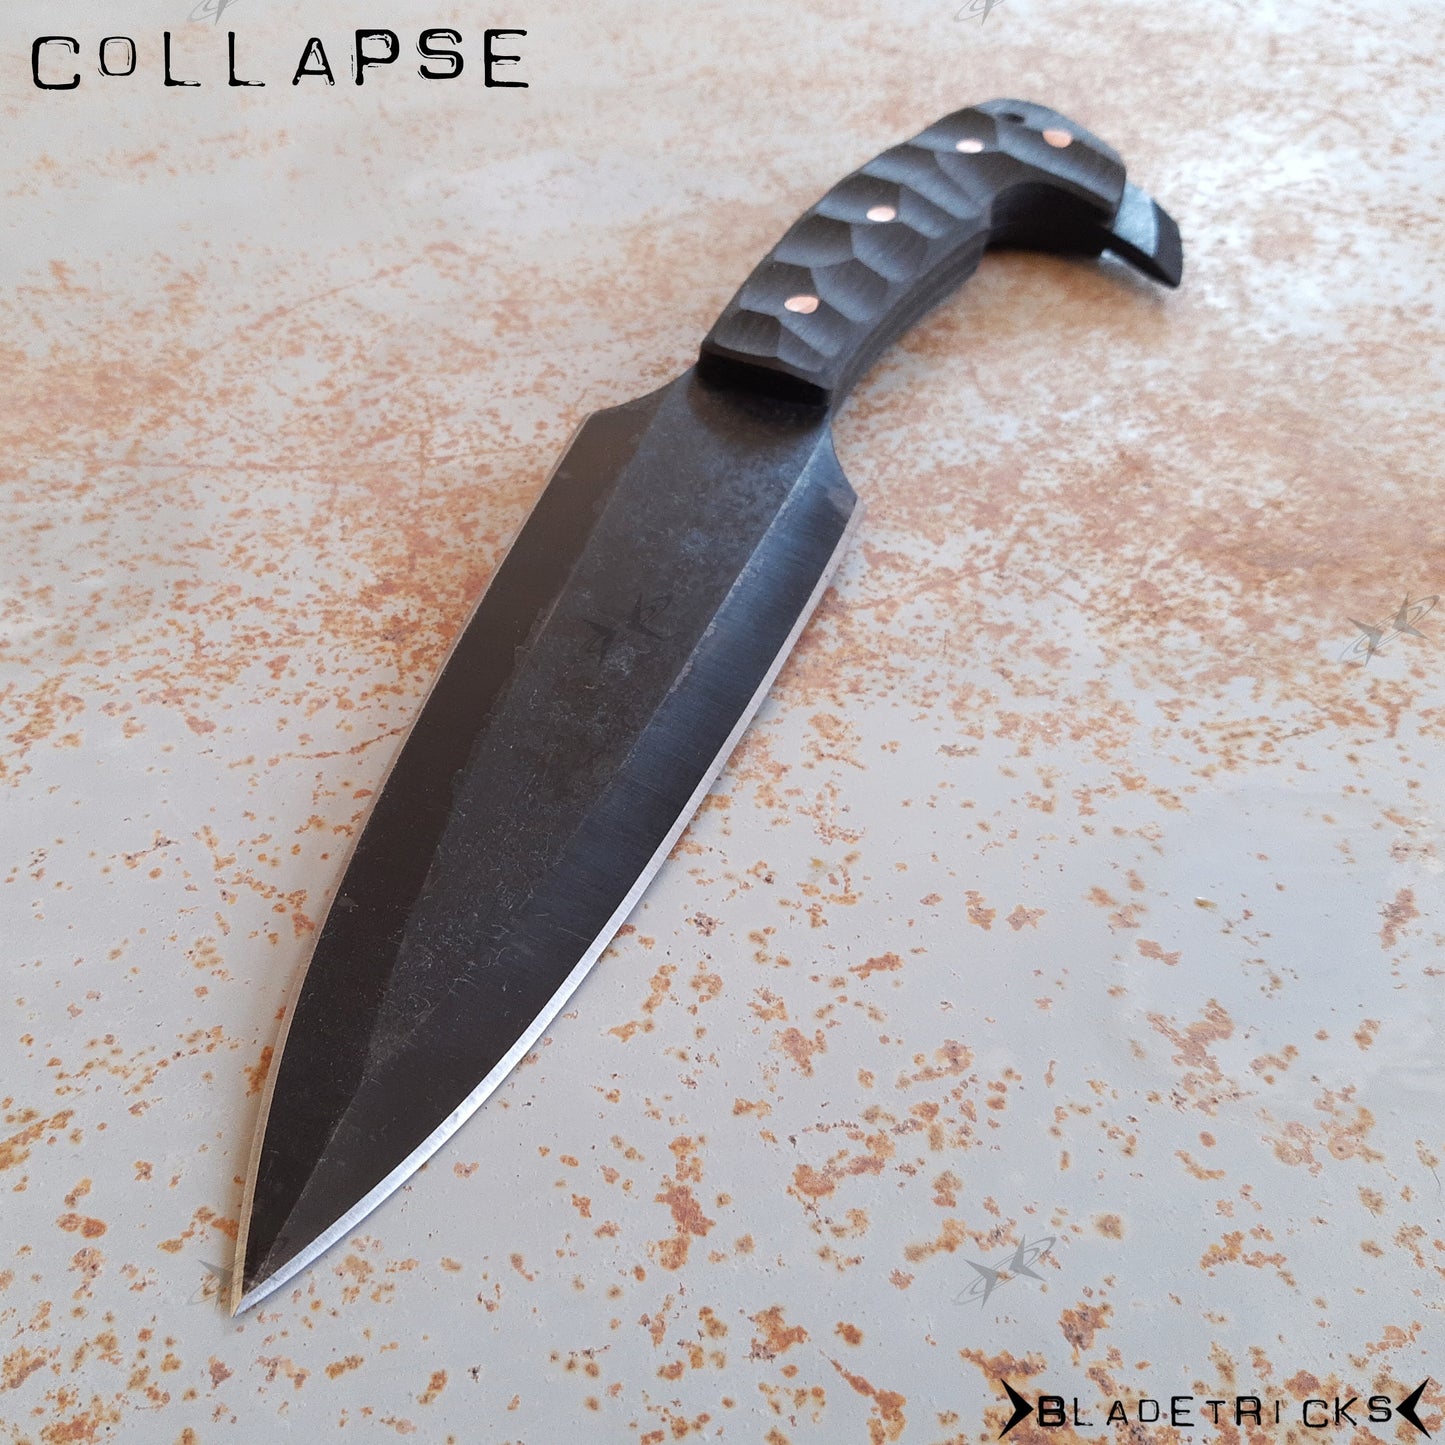 BLADETRICKS CUSTOM COLLAPSE DOUBLE EDGE KNIFE